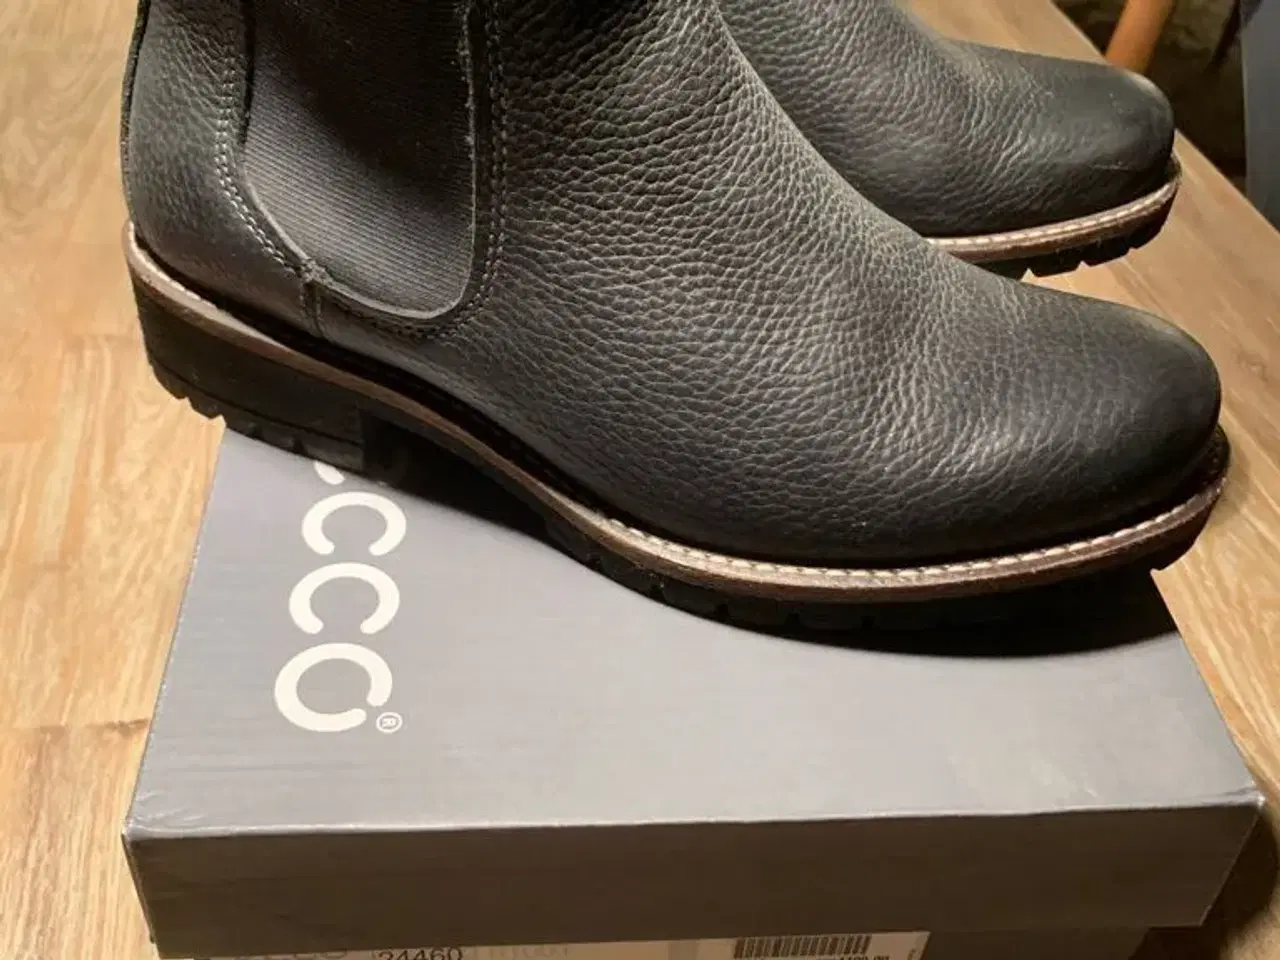 Billede 1 - Ecco støvler brugt 1 gang